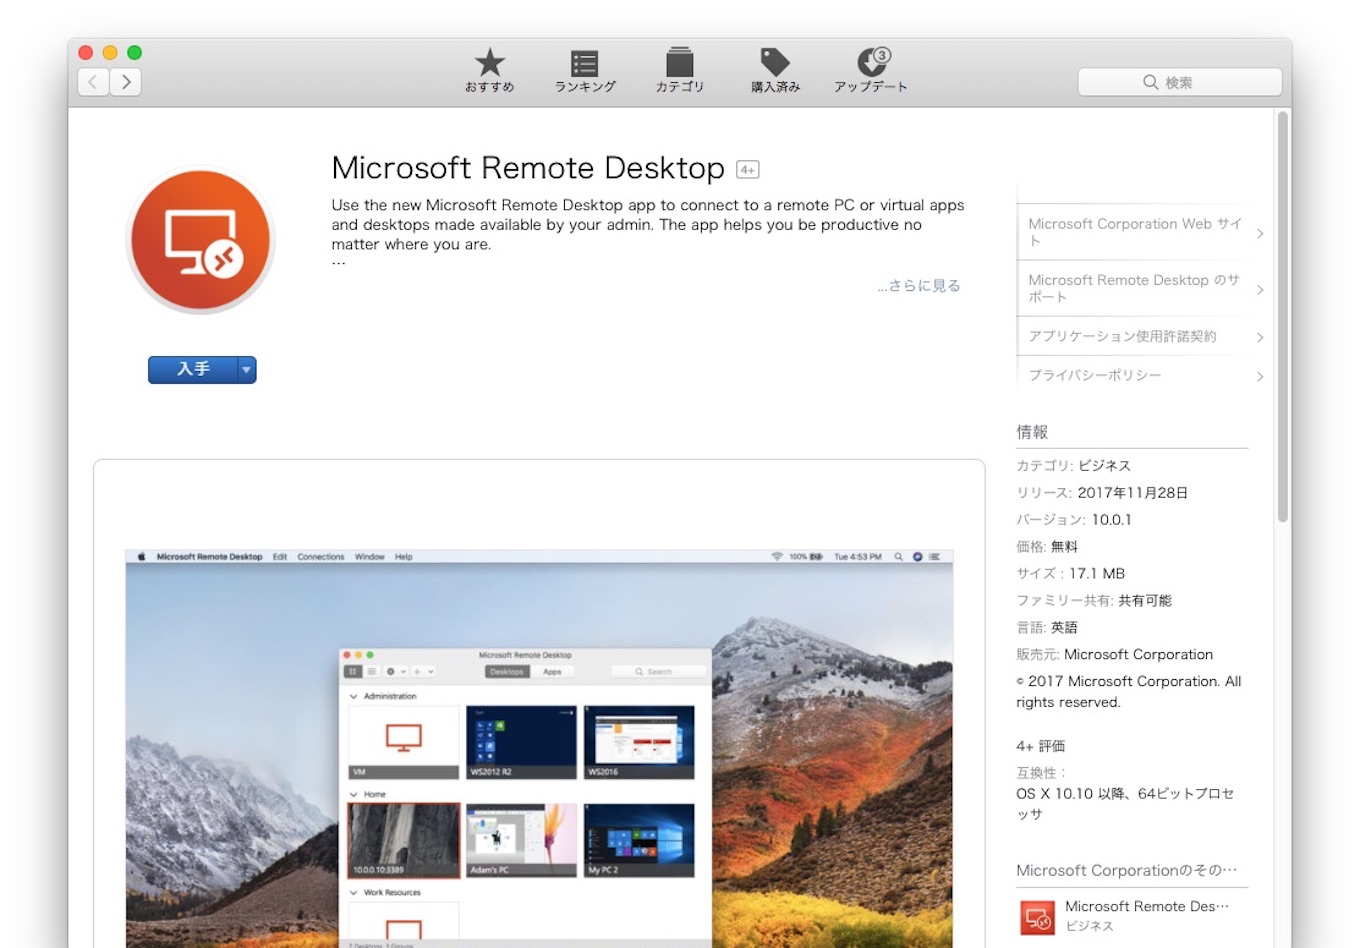 Microsoft remote desktop mac 8 vs 10 comparison